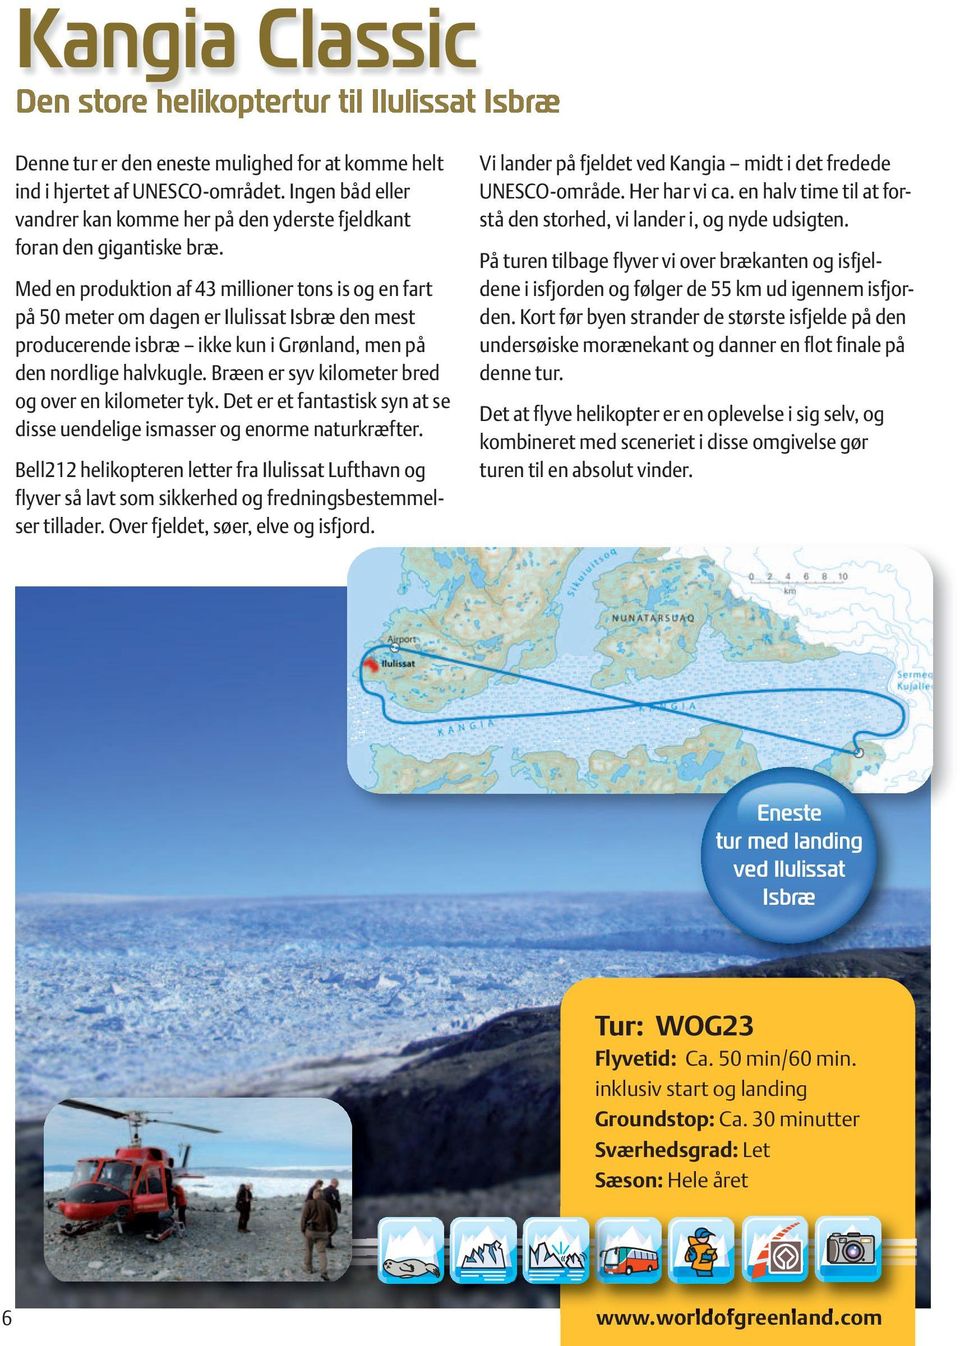 Med en produktion af 43 millioner tons is og en fart på 50 meter om dagen er Ilulissat Isbræ den mest producerende isbræ ikke kun i Grønland, men på den nordlige halvkugle.